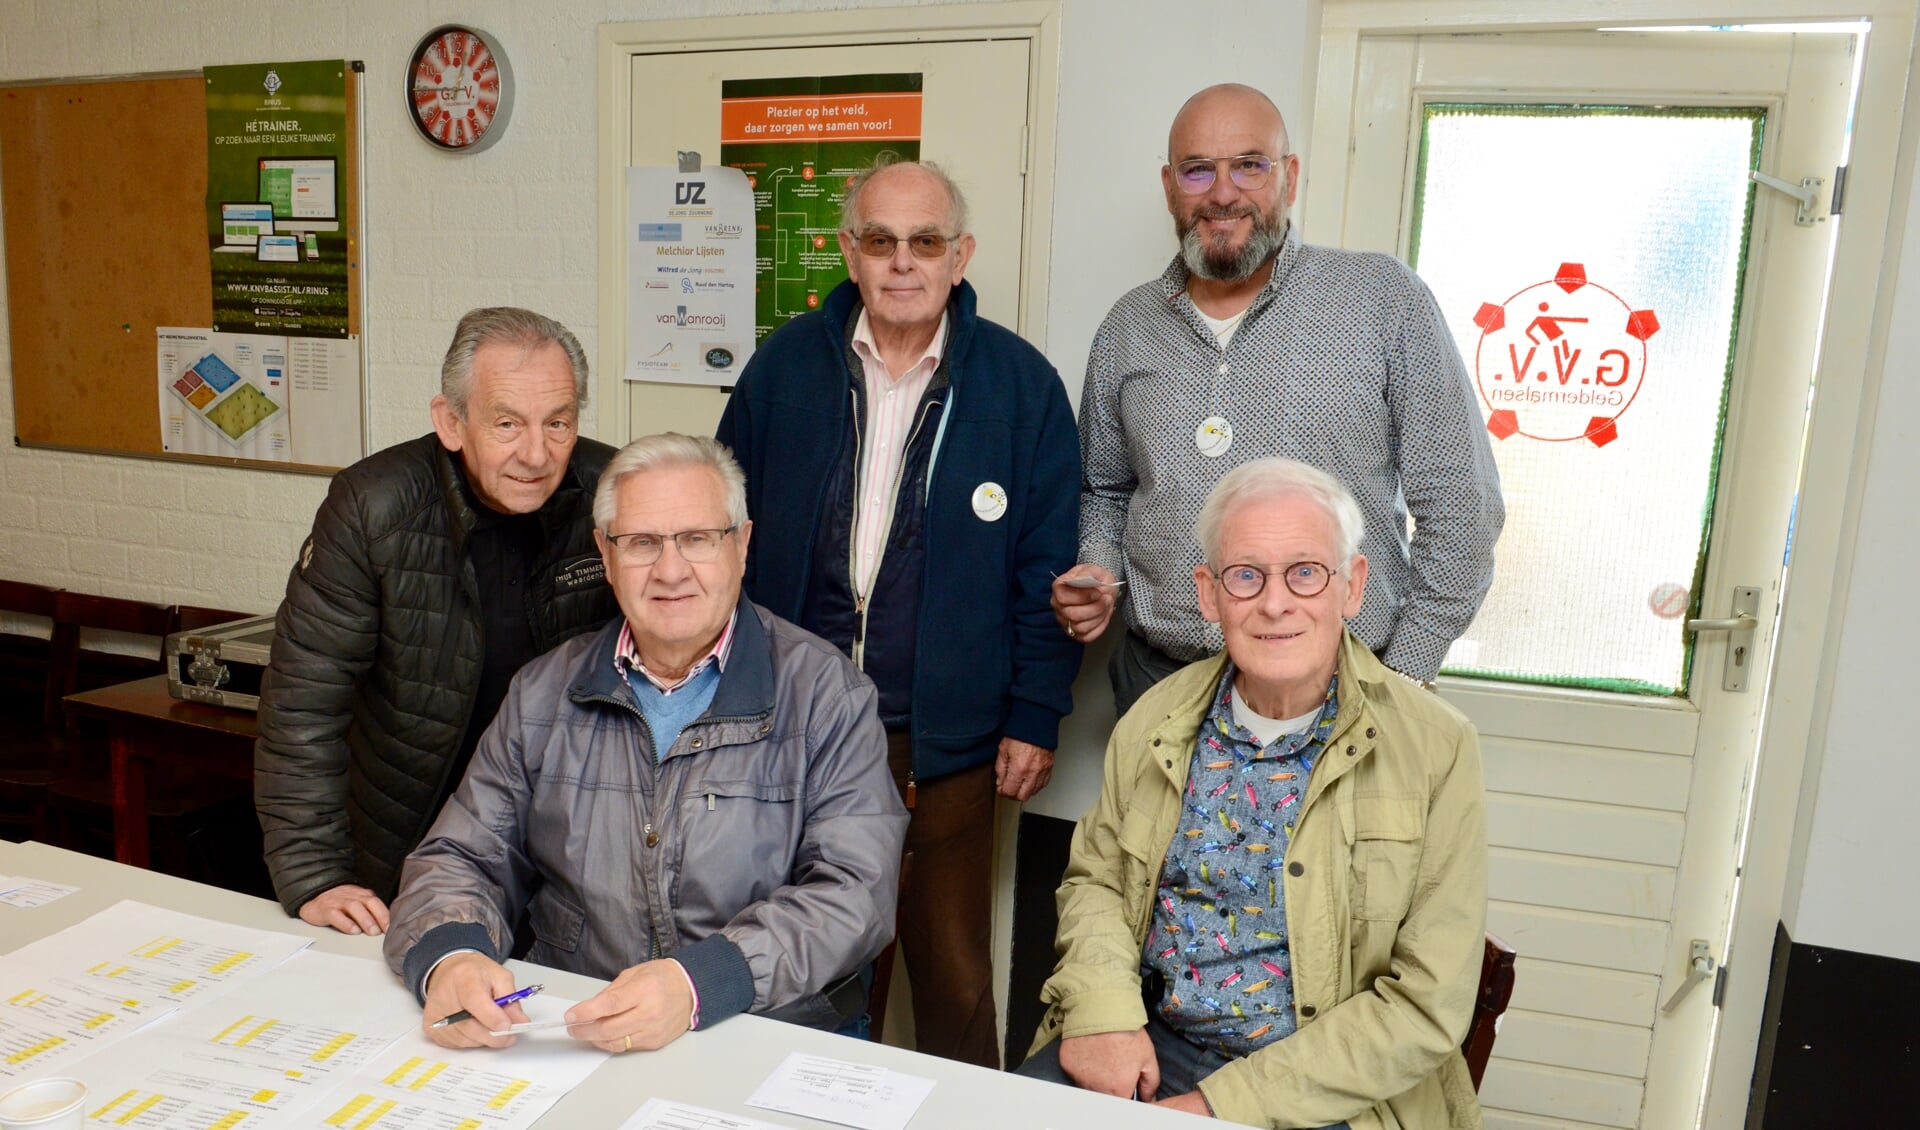 In de bestuurskamer van GVV Rien Nout (l) Dick Versteeg, Jan Maas, Rino Lafranceschina en Rinus Korteweg.